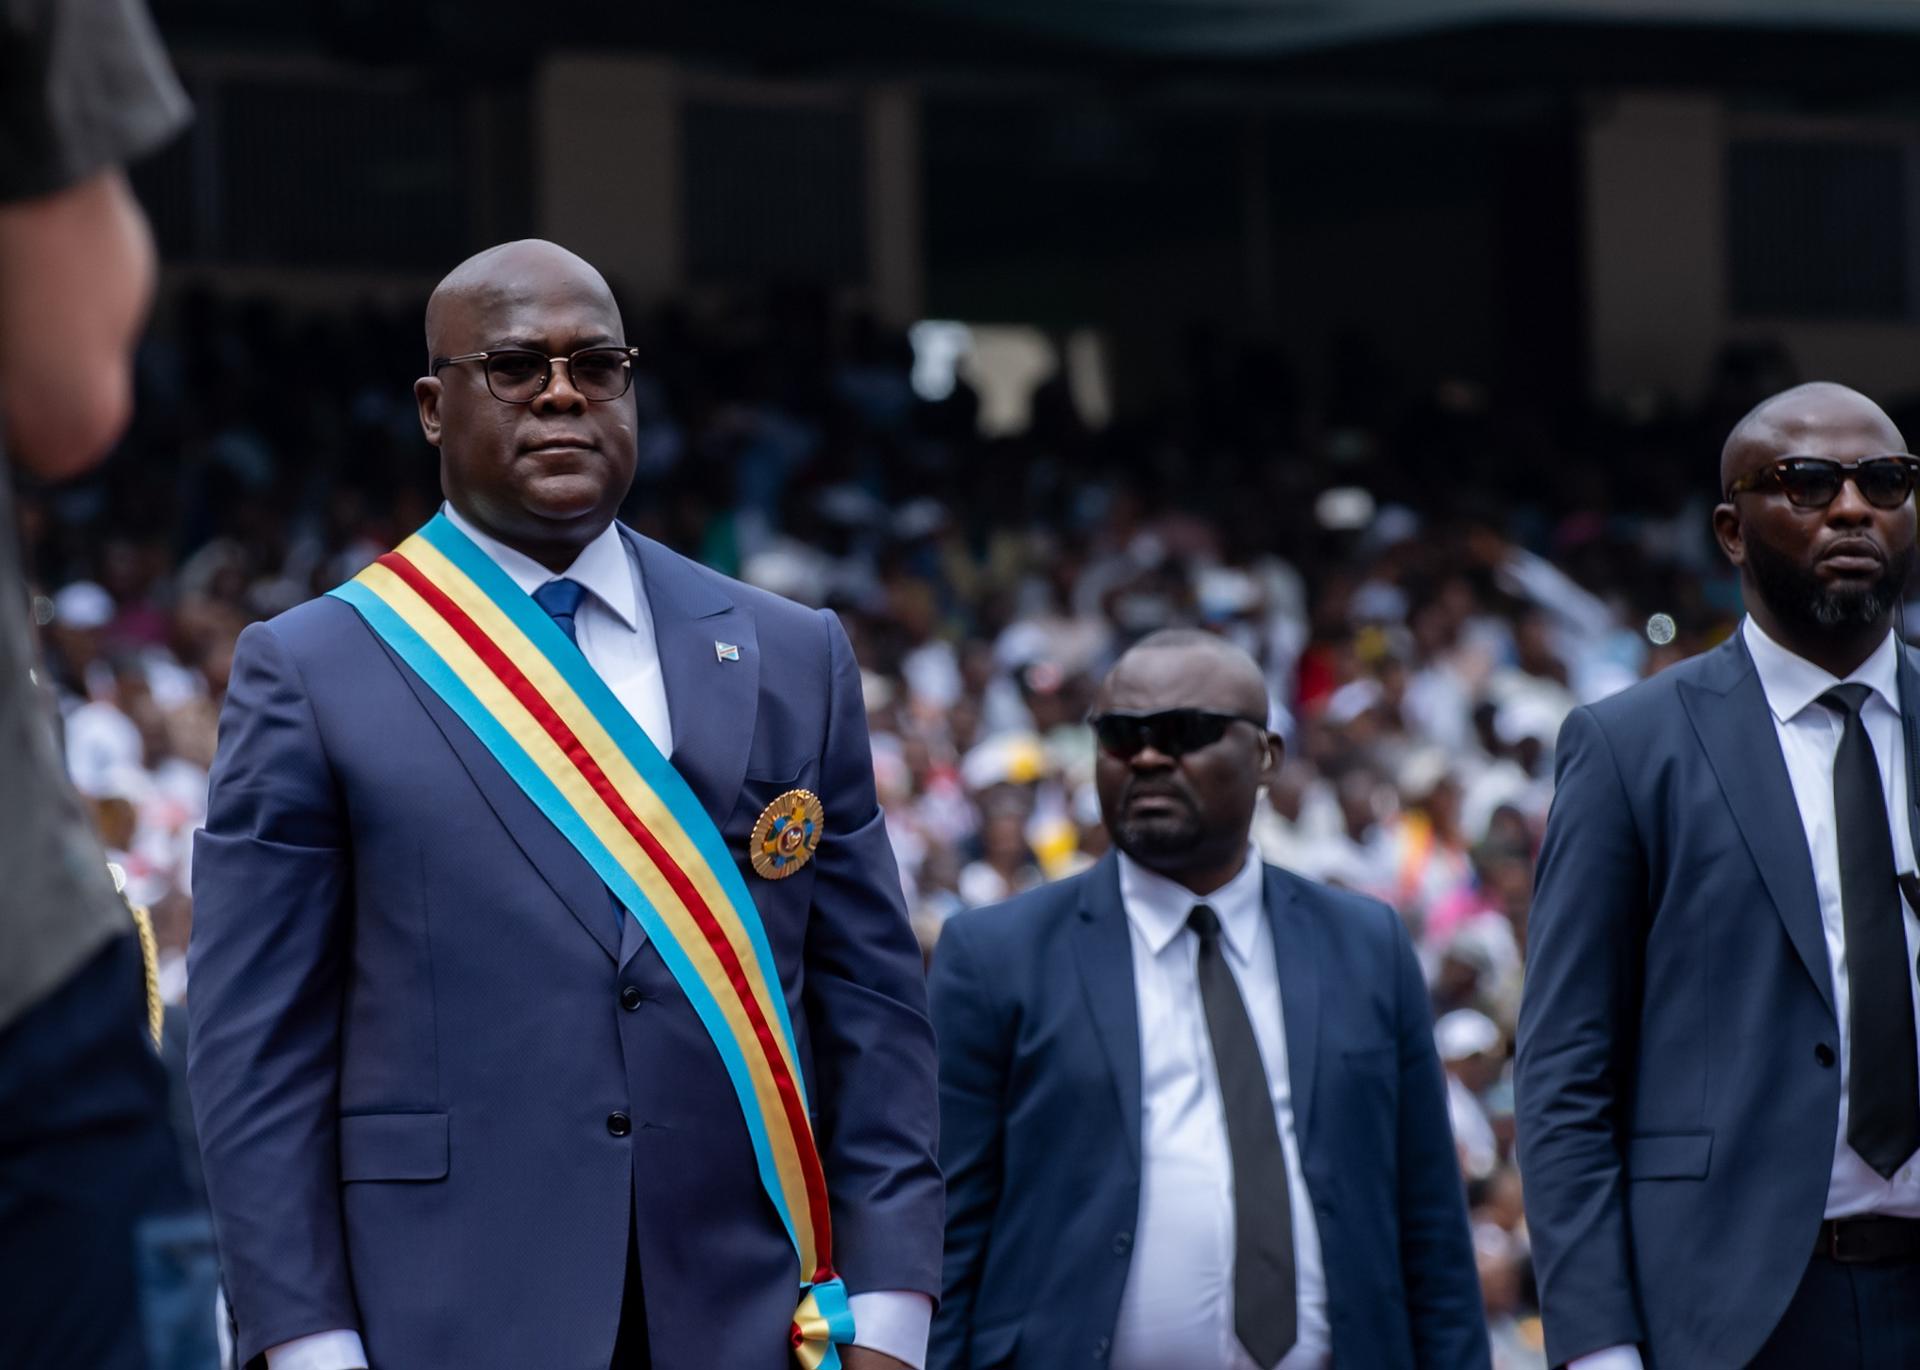 El presidente de la República Democrática del Congo (RDC), Félix Tshisekedi, este sábado en la ceremonia de investidura para un segundo mandato. EFE/EPA/CHRIS MILOSI